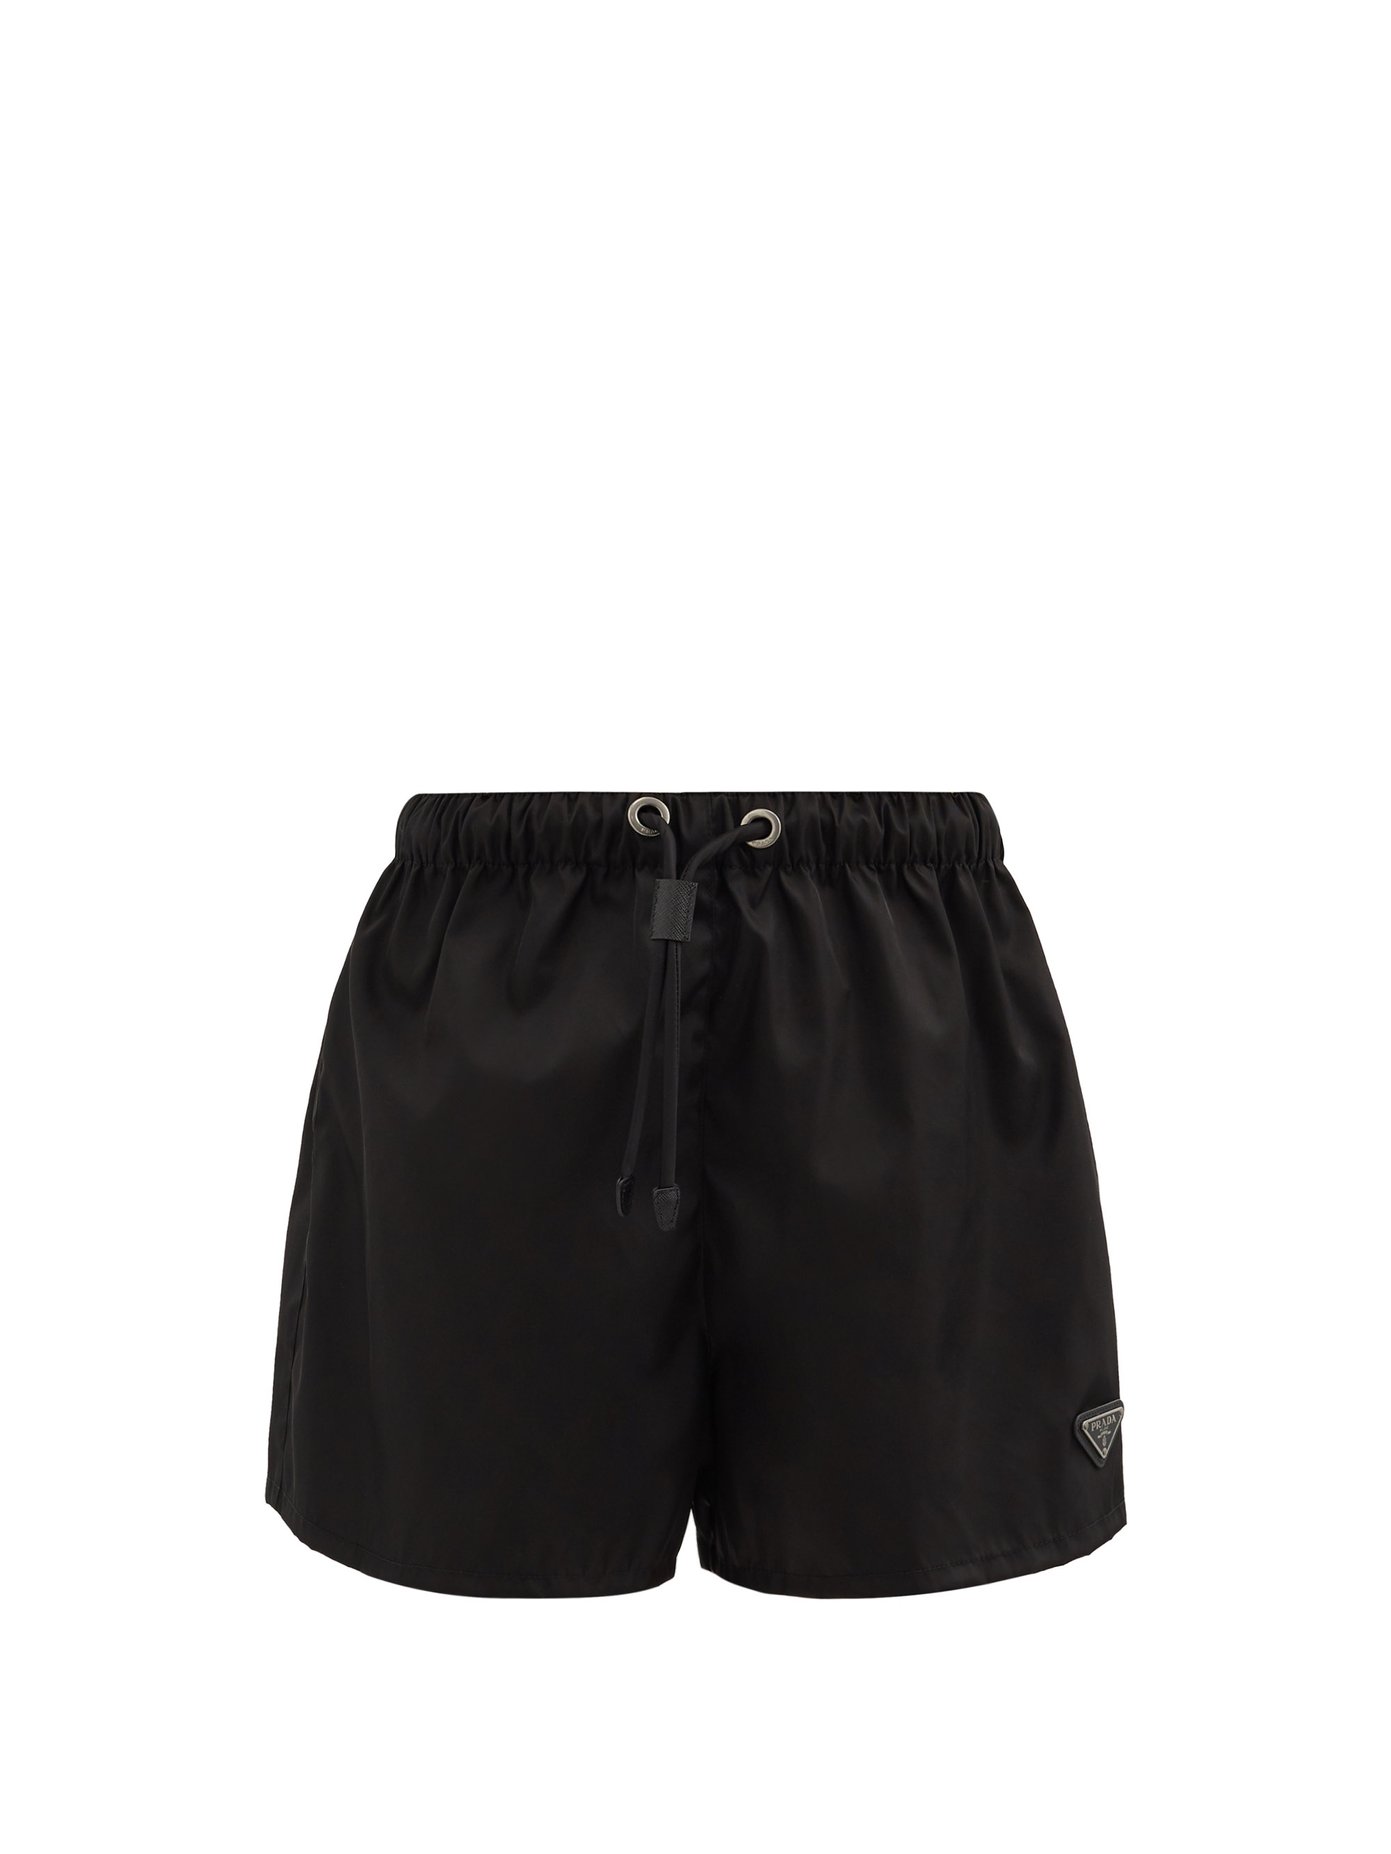 prada shorts nylon